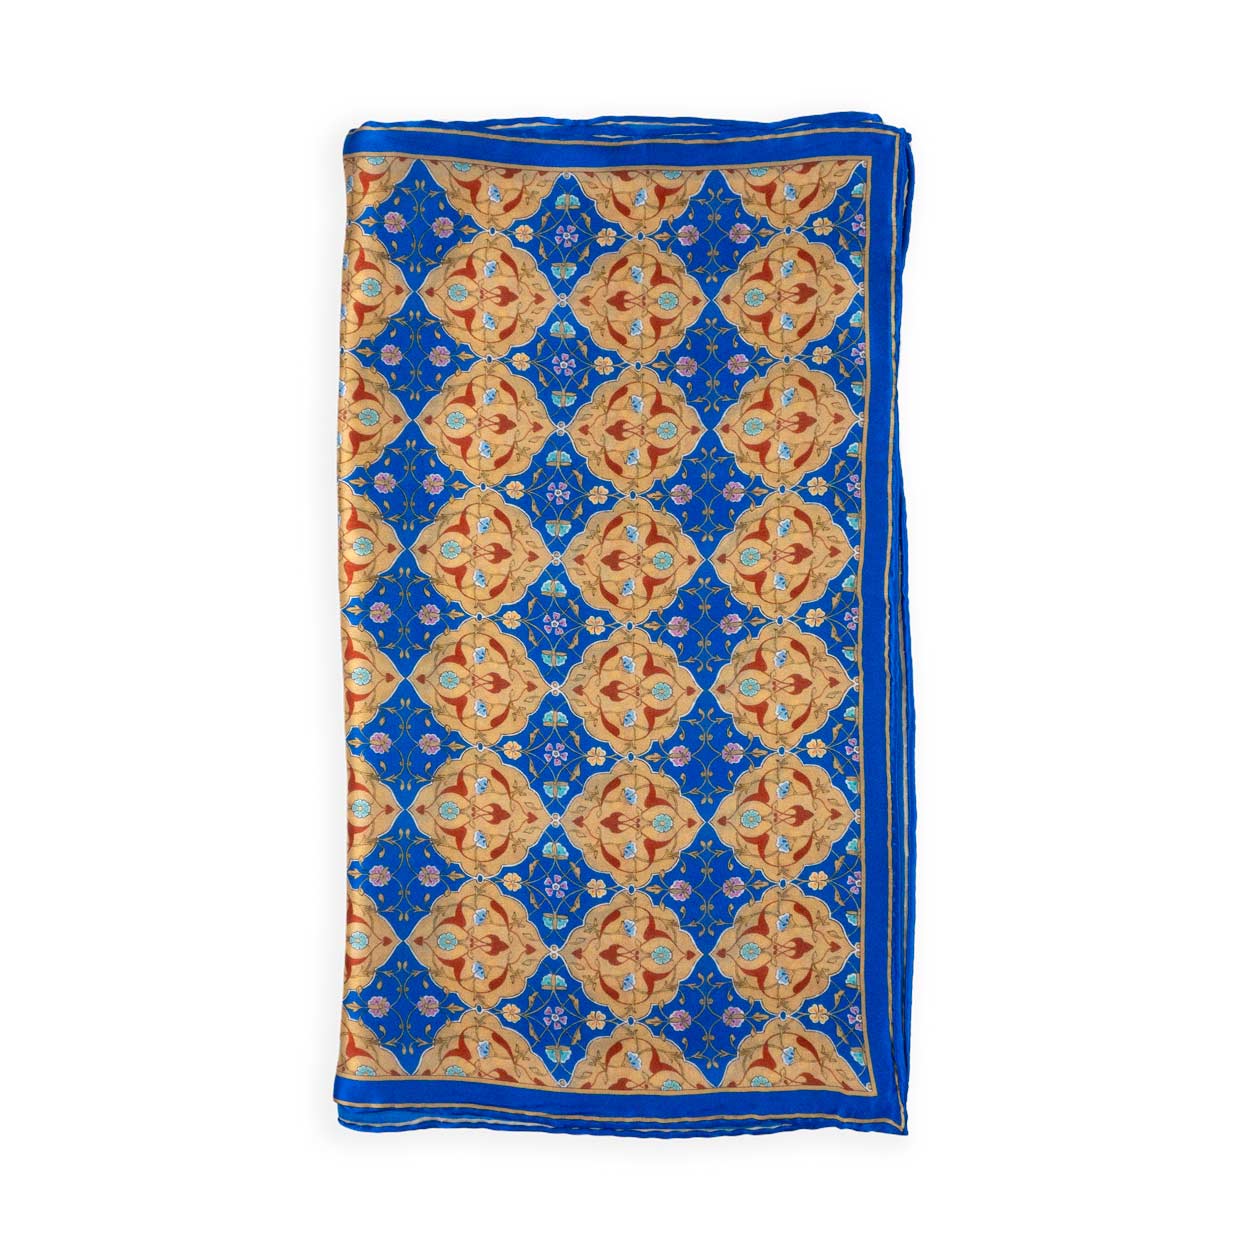 Fular de seda azul y marrón con diseño turco